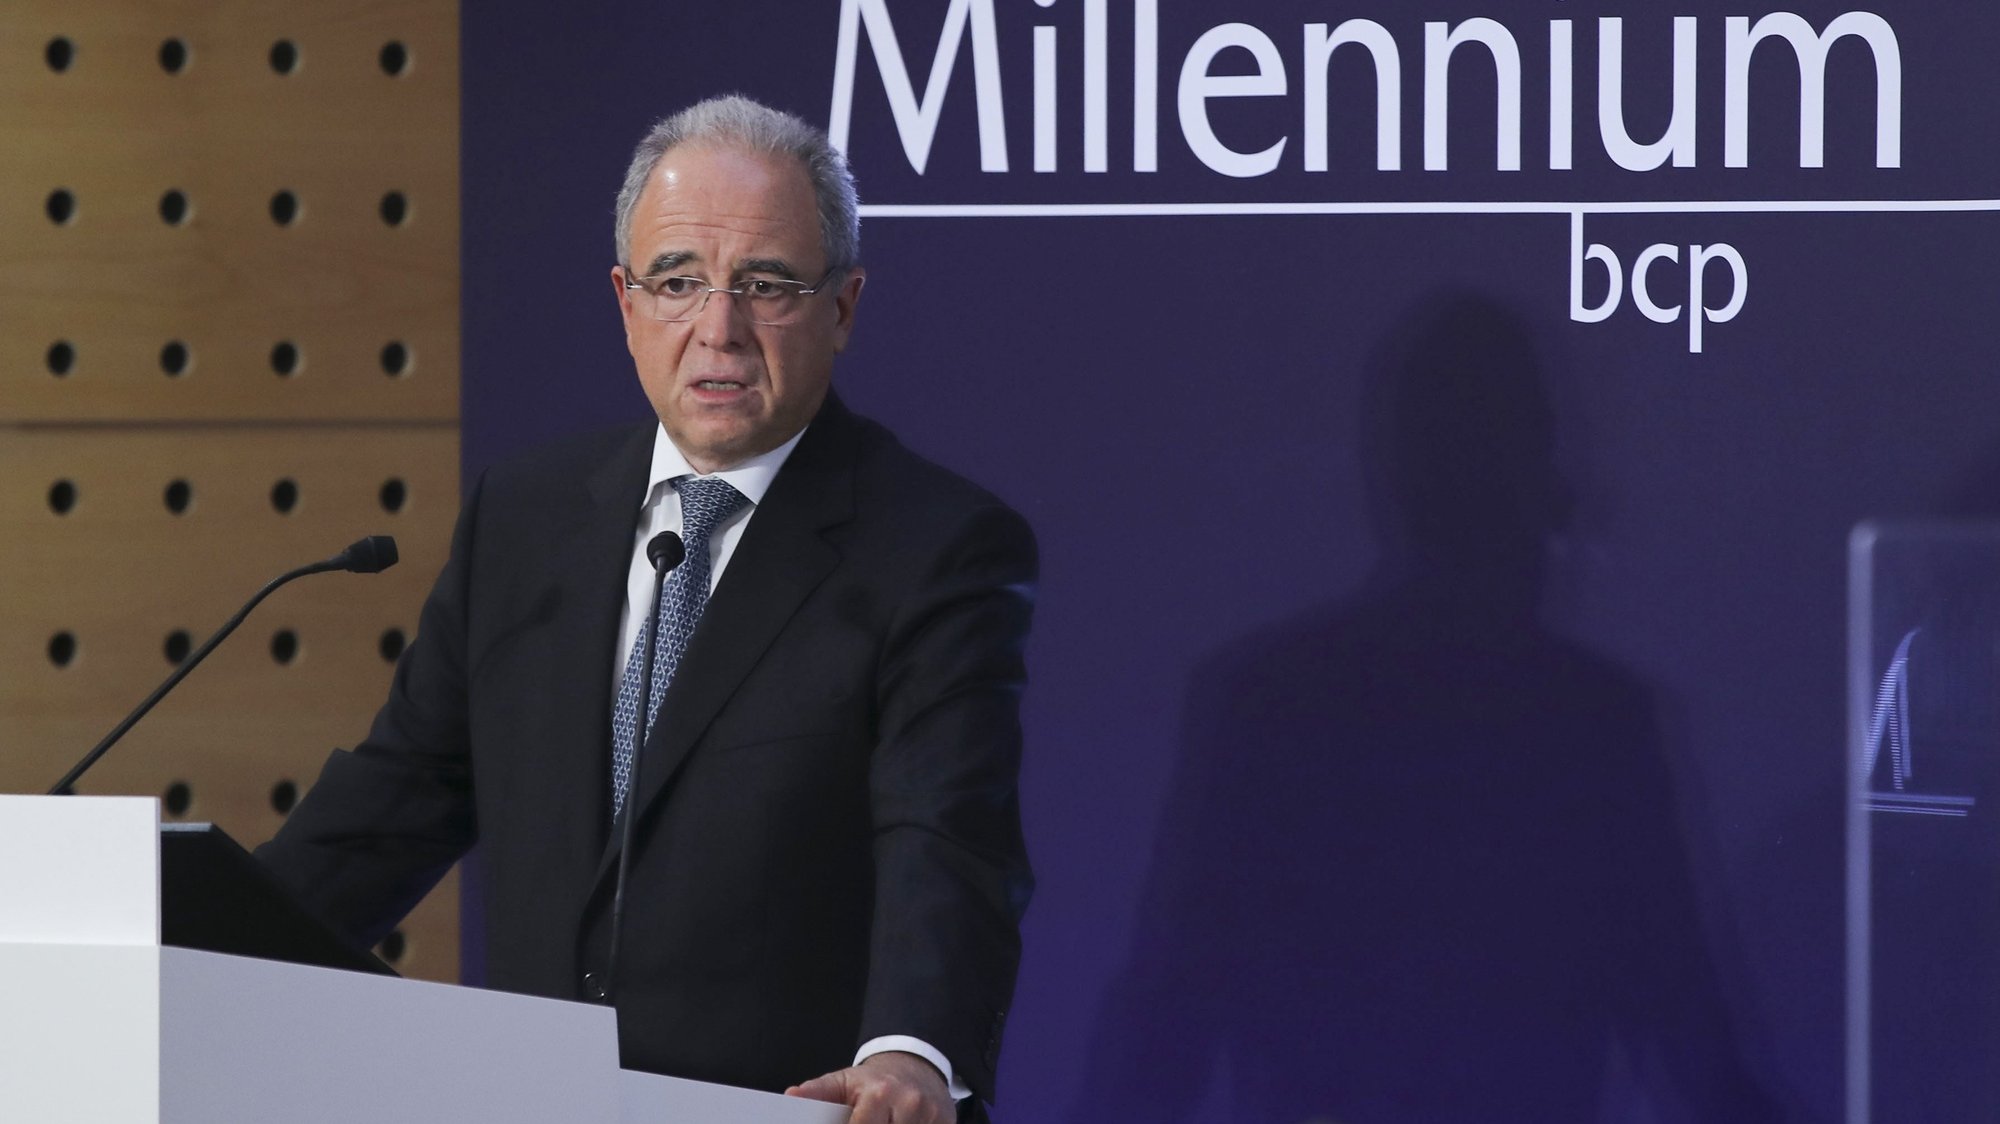 O presidente do Millennium BCP, Nuno Amado, durante a conferência de imprensa de apresentação dos resultados de 2021, Oeiras, 28 de fevereiro de 2022.  MANUEL DE ALMEIDA/LUSA